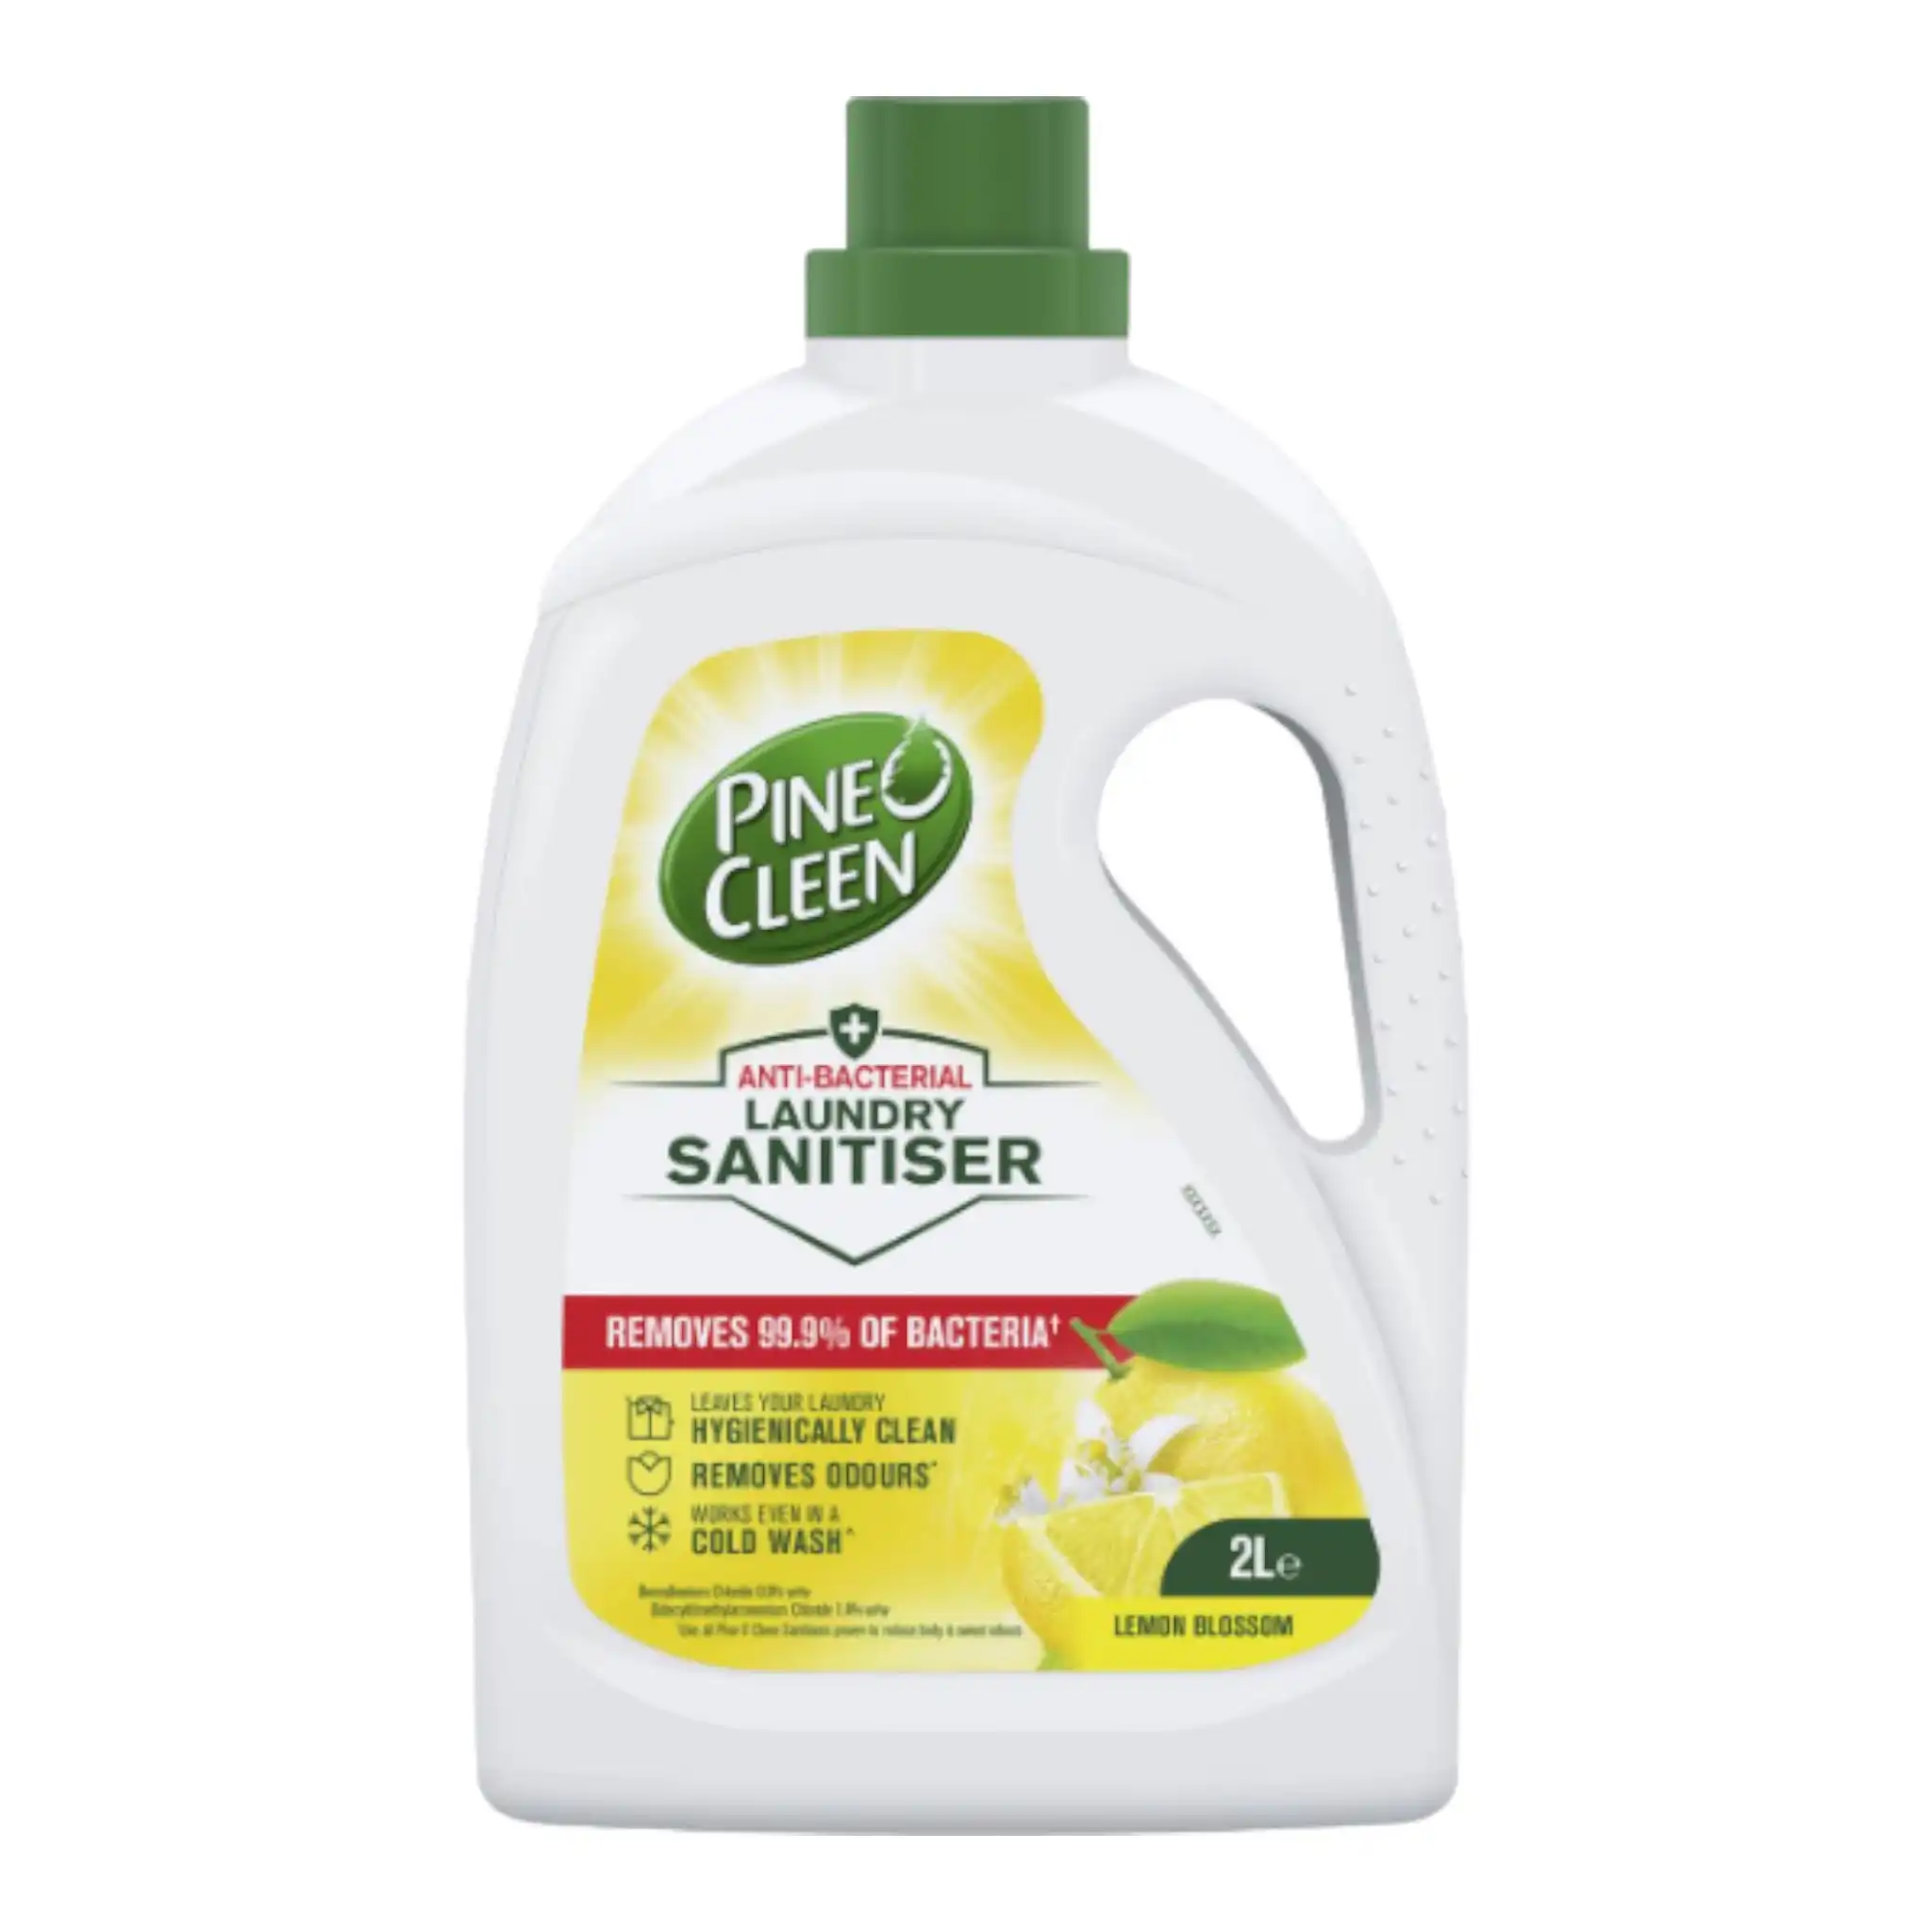 Pine O Cleen Antibacterial Laundry Sanitiser Lemon Blossom 2L